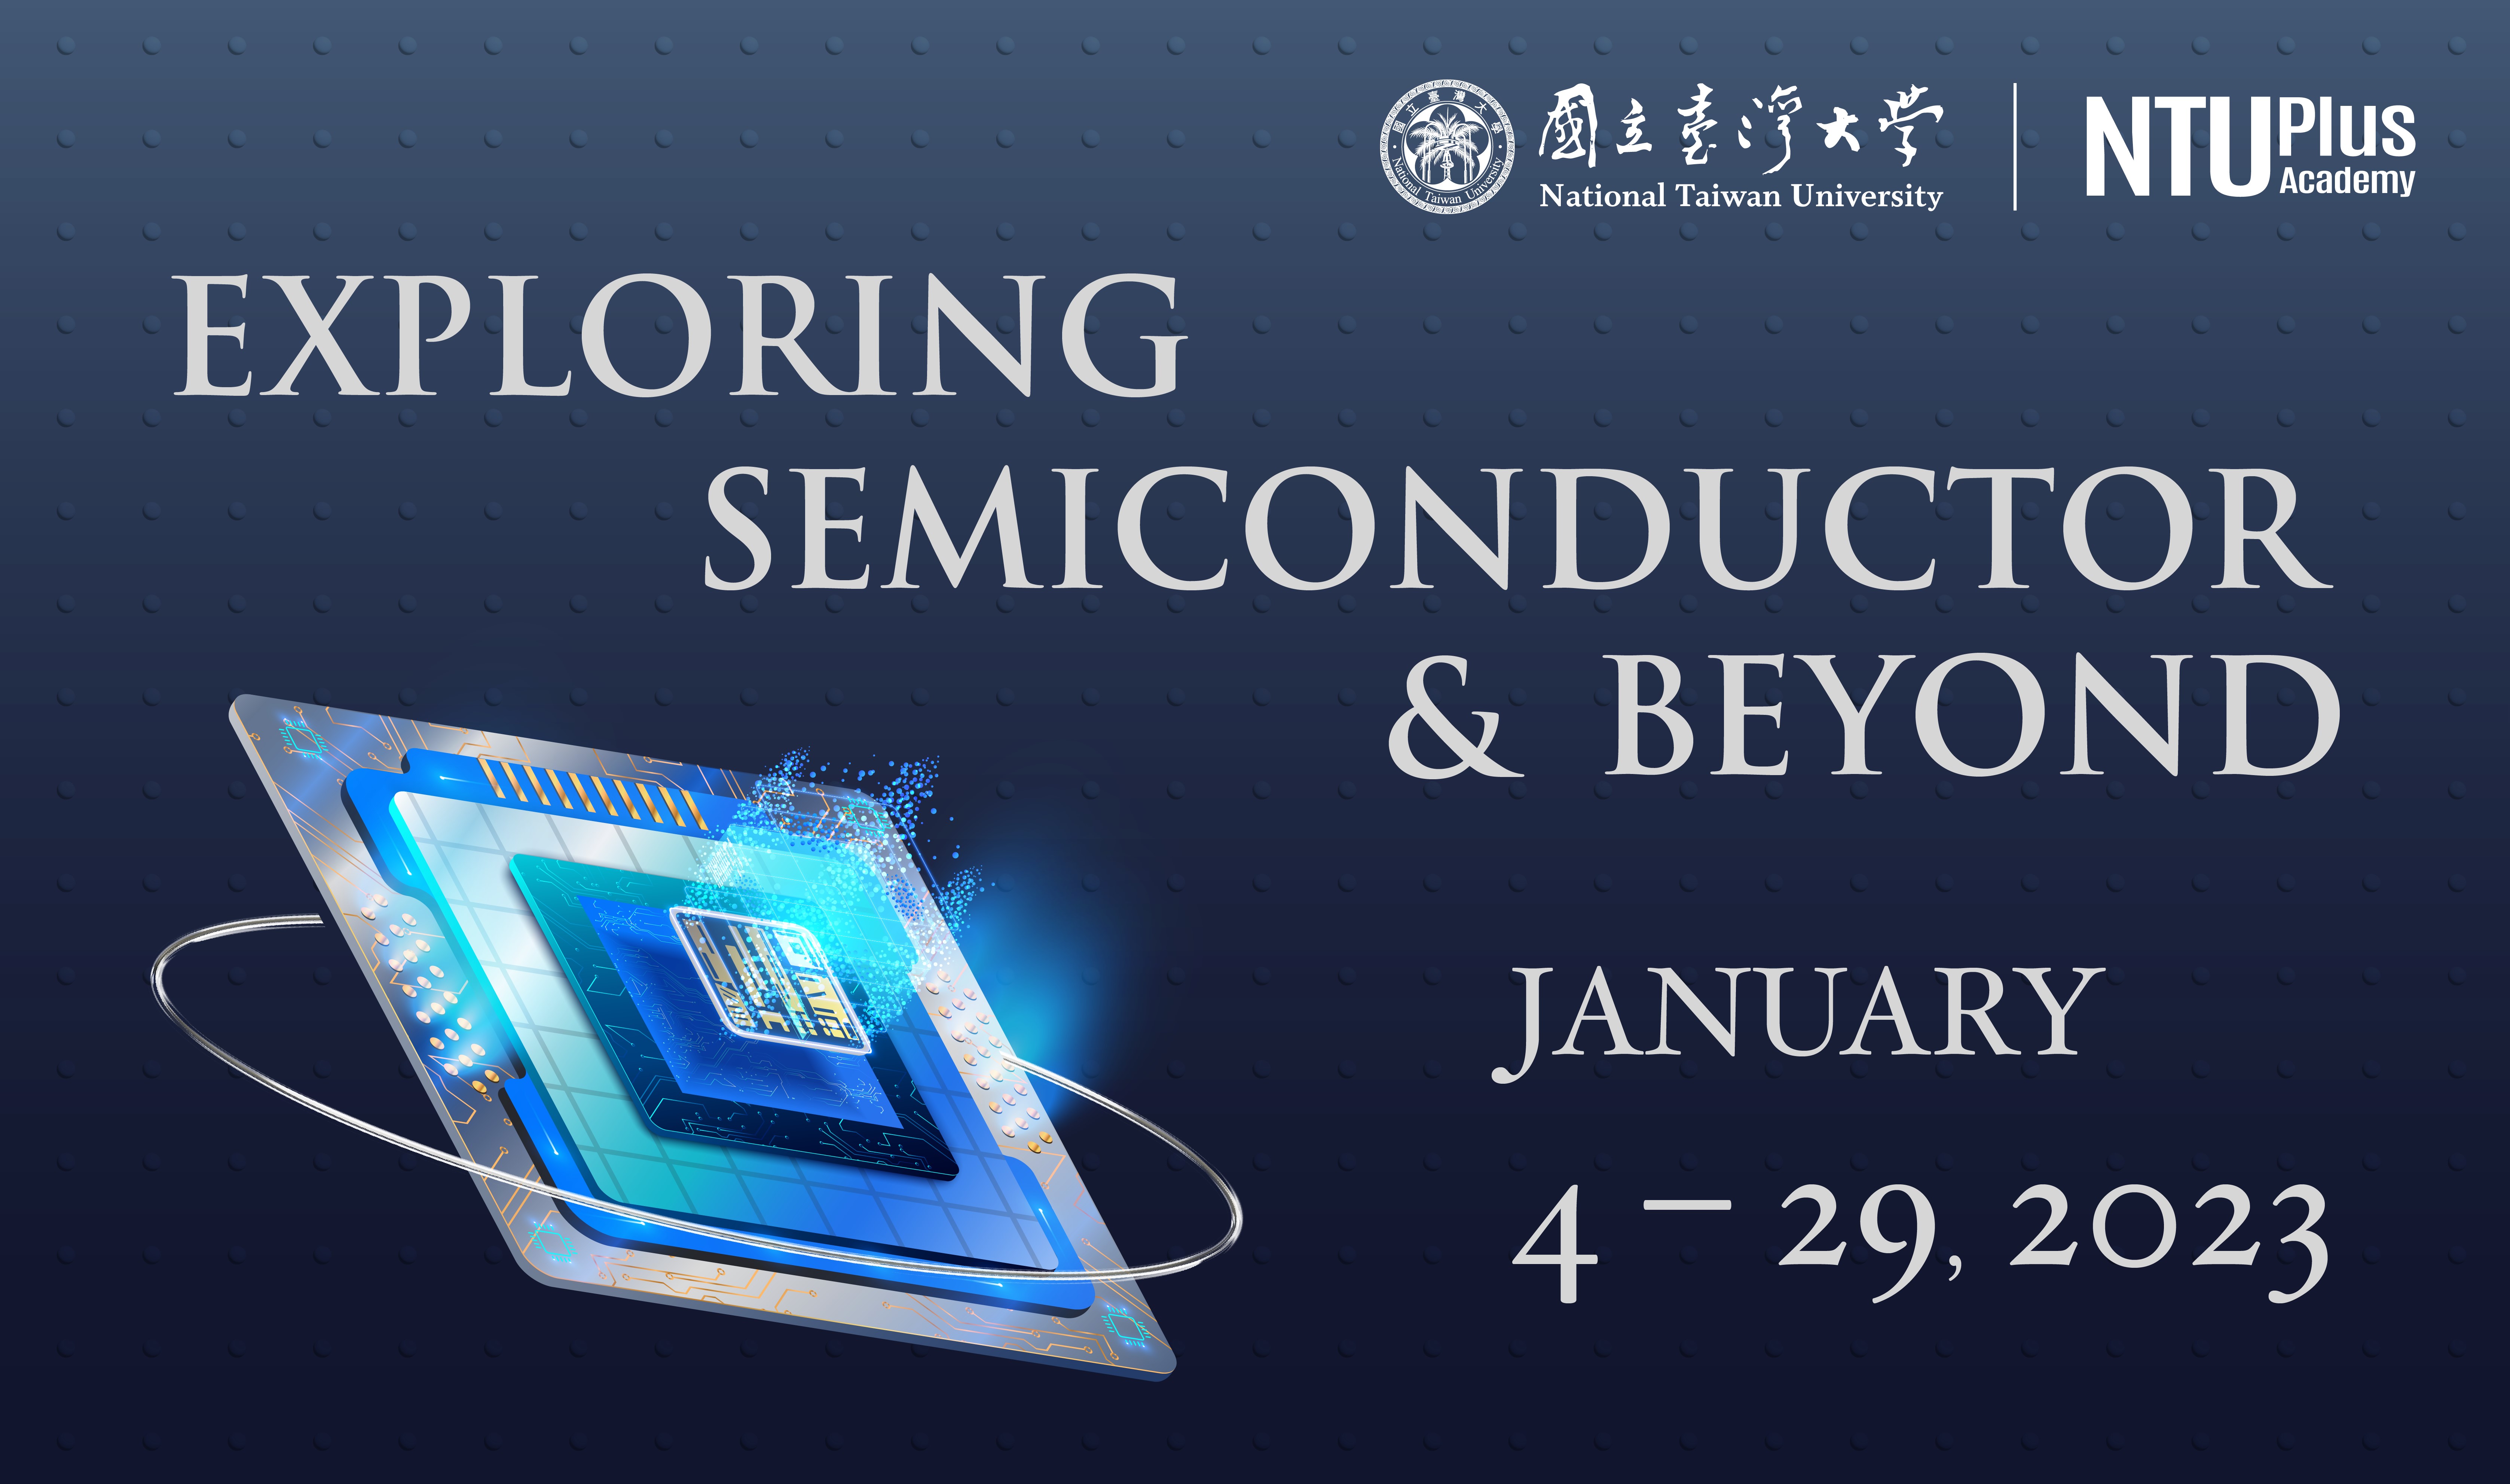 IImage: NTU Plus Academy Exploring Semiconductor & Beyond Program~2023/1/29